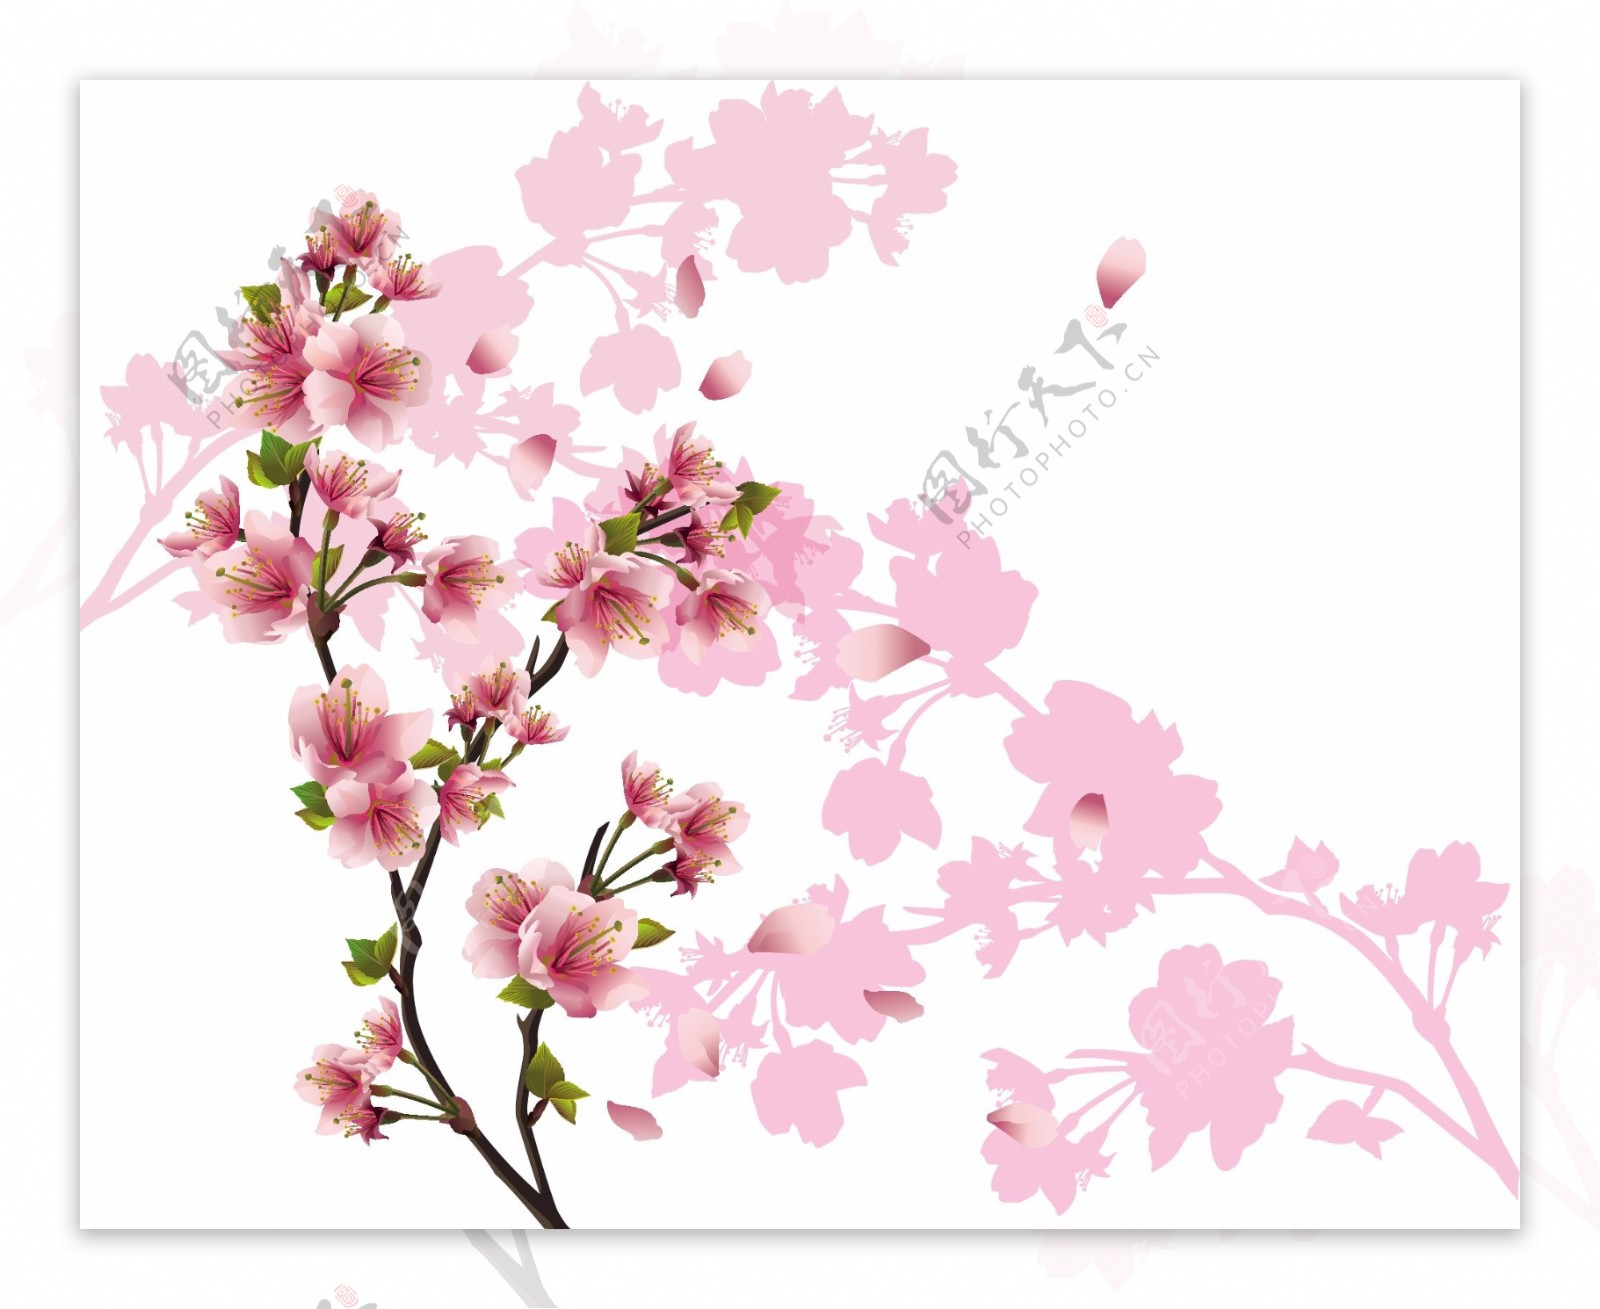 粉红色桃花和树枝